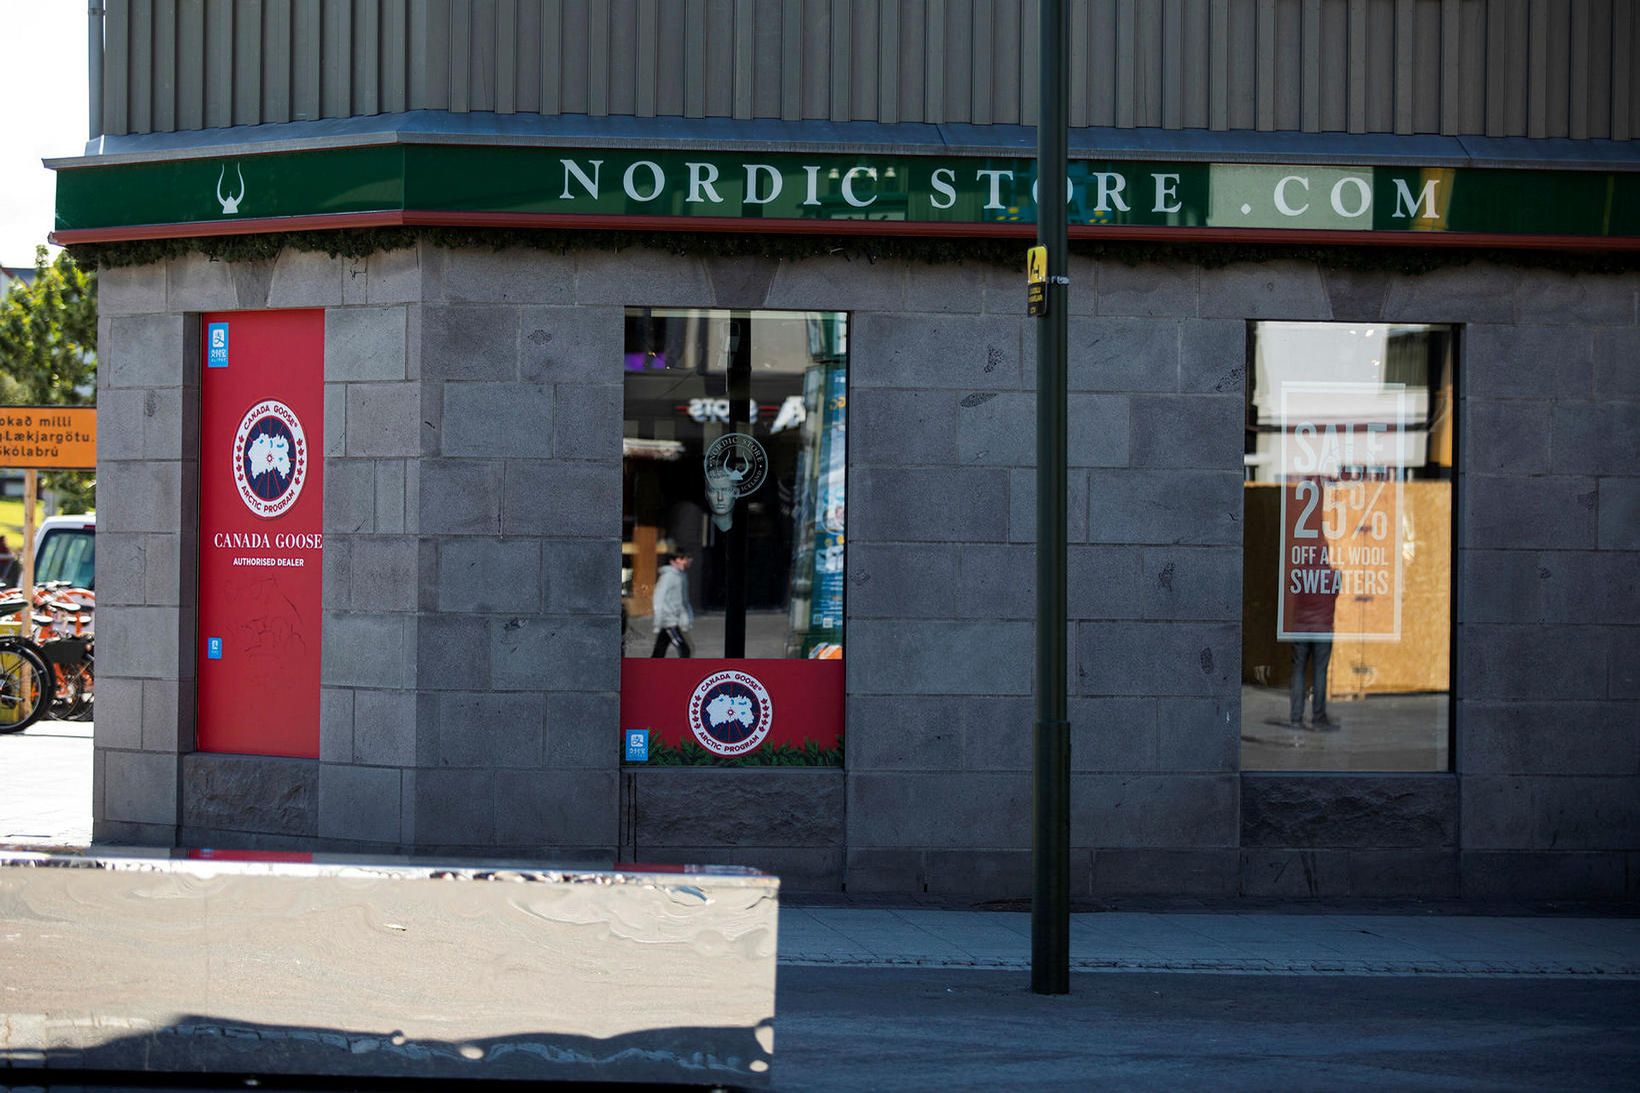 Áformað er að loka öllum verslunum Nordic Store.